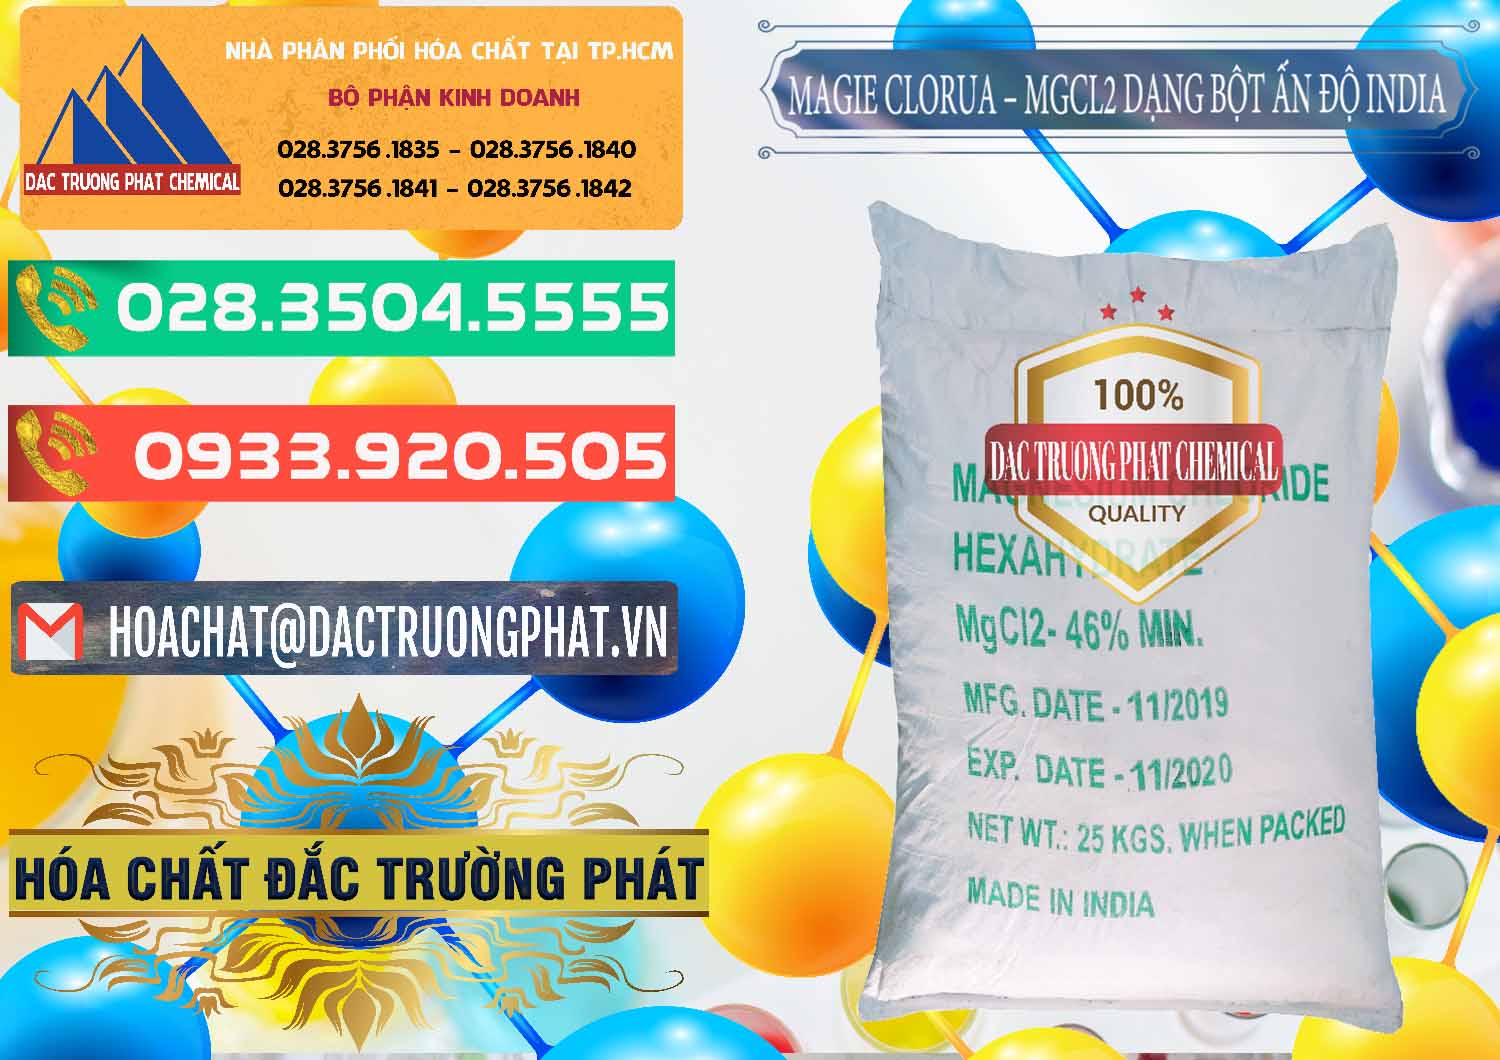 Nơi chuyên cung cấp ( bán ) Magie Clorua – MGCL2 96% Dạng Bột Ấn Độ India - 0206 - Cty chuyên bán và phân phối hóa chất tại TP.HCM - congtyhoachat.com.vn